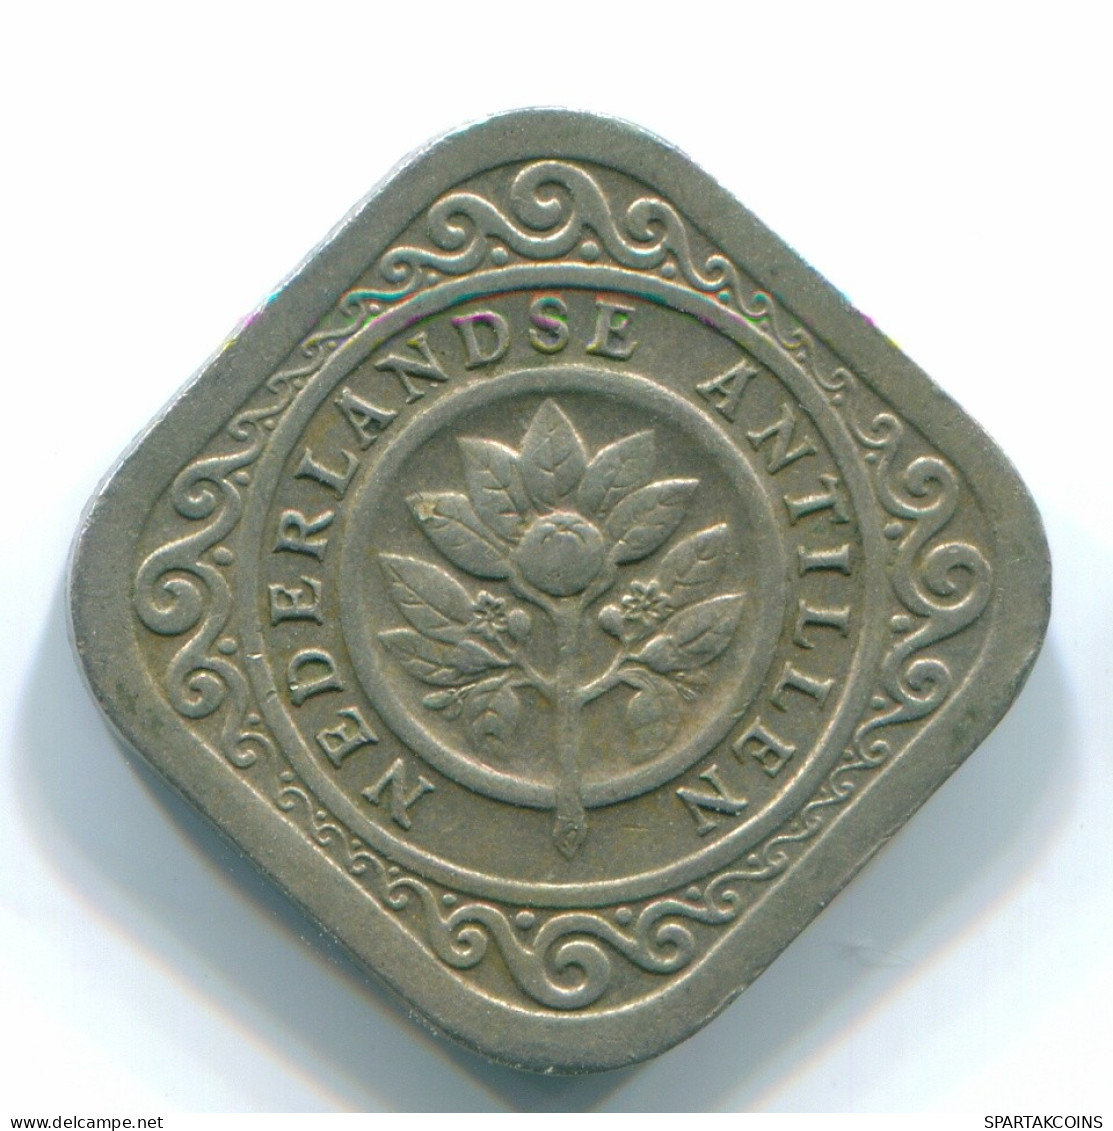 5 CENTS 1967 NIEDERLÄNDISCHE ANTILLEN Nickel Koloniale Münze #S12475.D.A - Antilles Néerlandaises